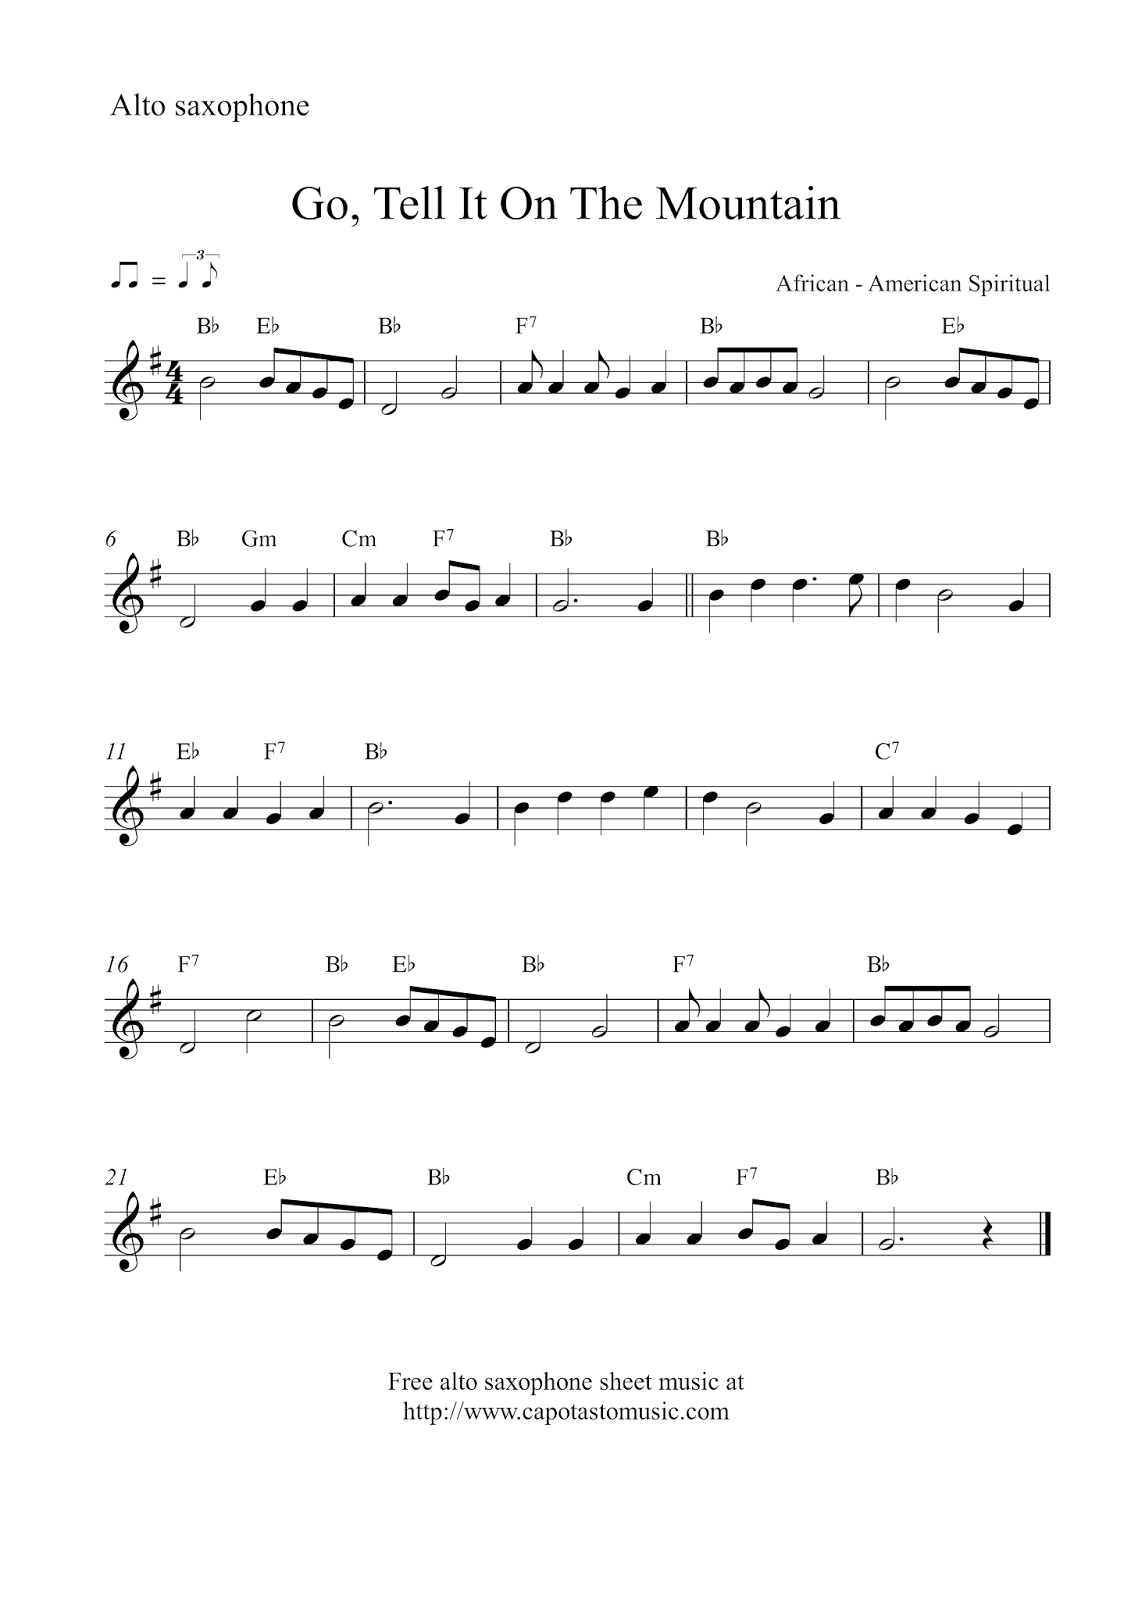 Free Christmas Alto Saxophone Sheet Music - Go, Tell It On The Mountain - Free Printable Alto Saxophone Sheet Music